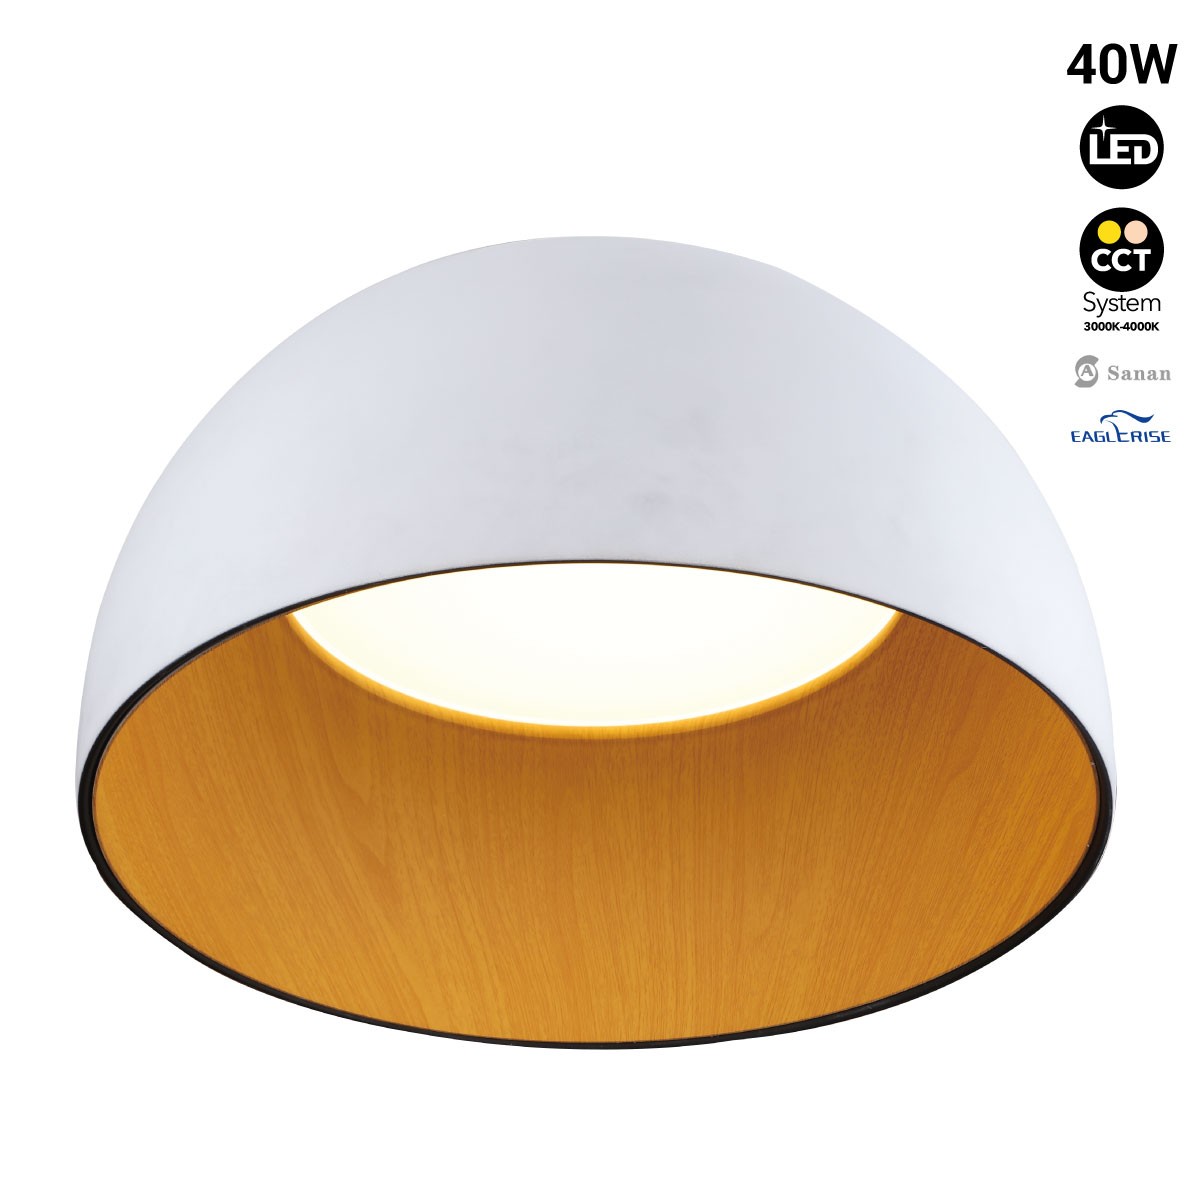 LED ceiling lamp "GINA" 40W- CCT (3000K-4000K) - Wood